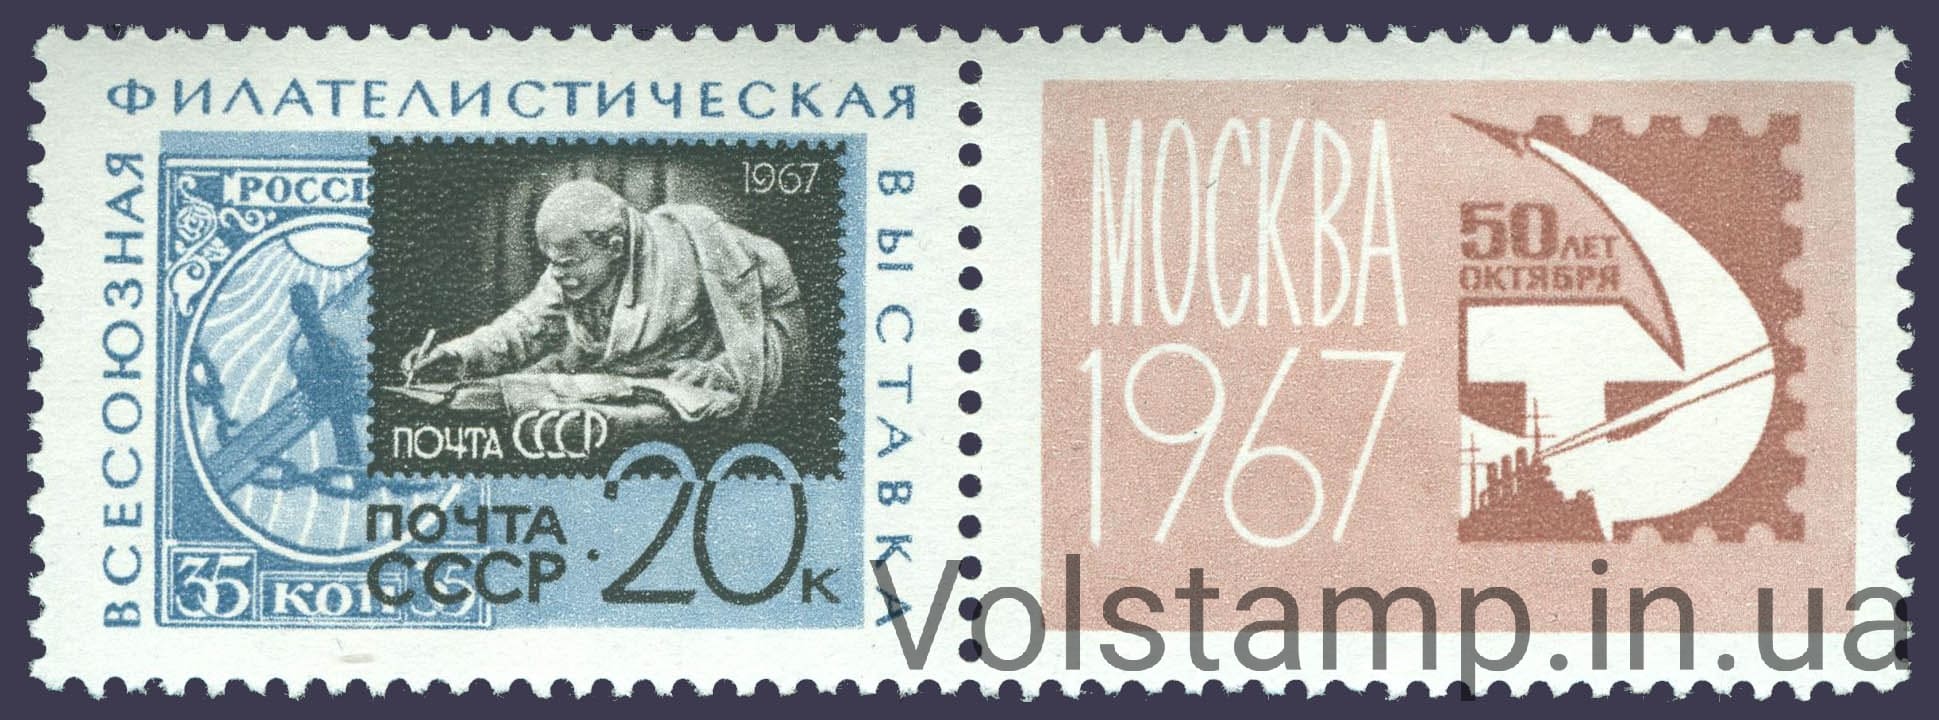 1967 марка с купоном Всесоюзная филателистическая выставка 50 лет Октября №3401